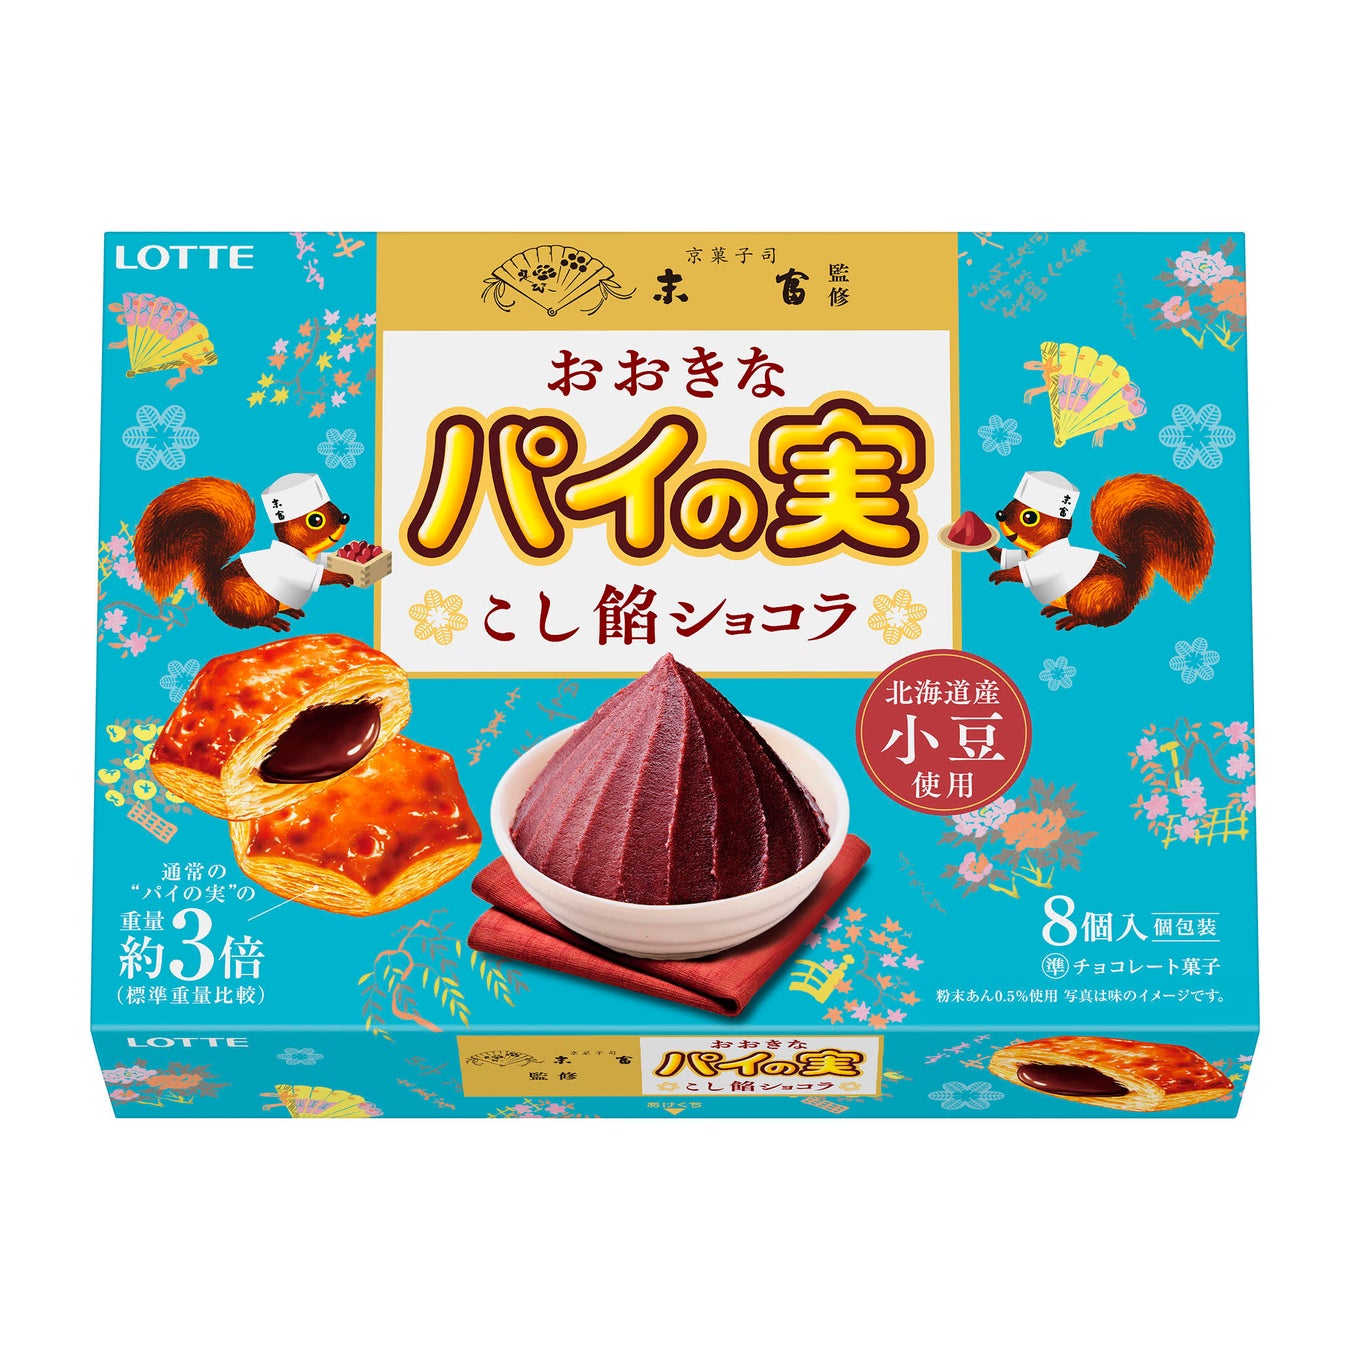 トレンドの「チョコレート×和菓子」初コラボレーションが実現！『京菓子司末富監修 紗々＜きなこ黒蜜＞』を発売いたします。